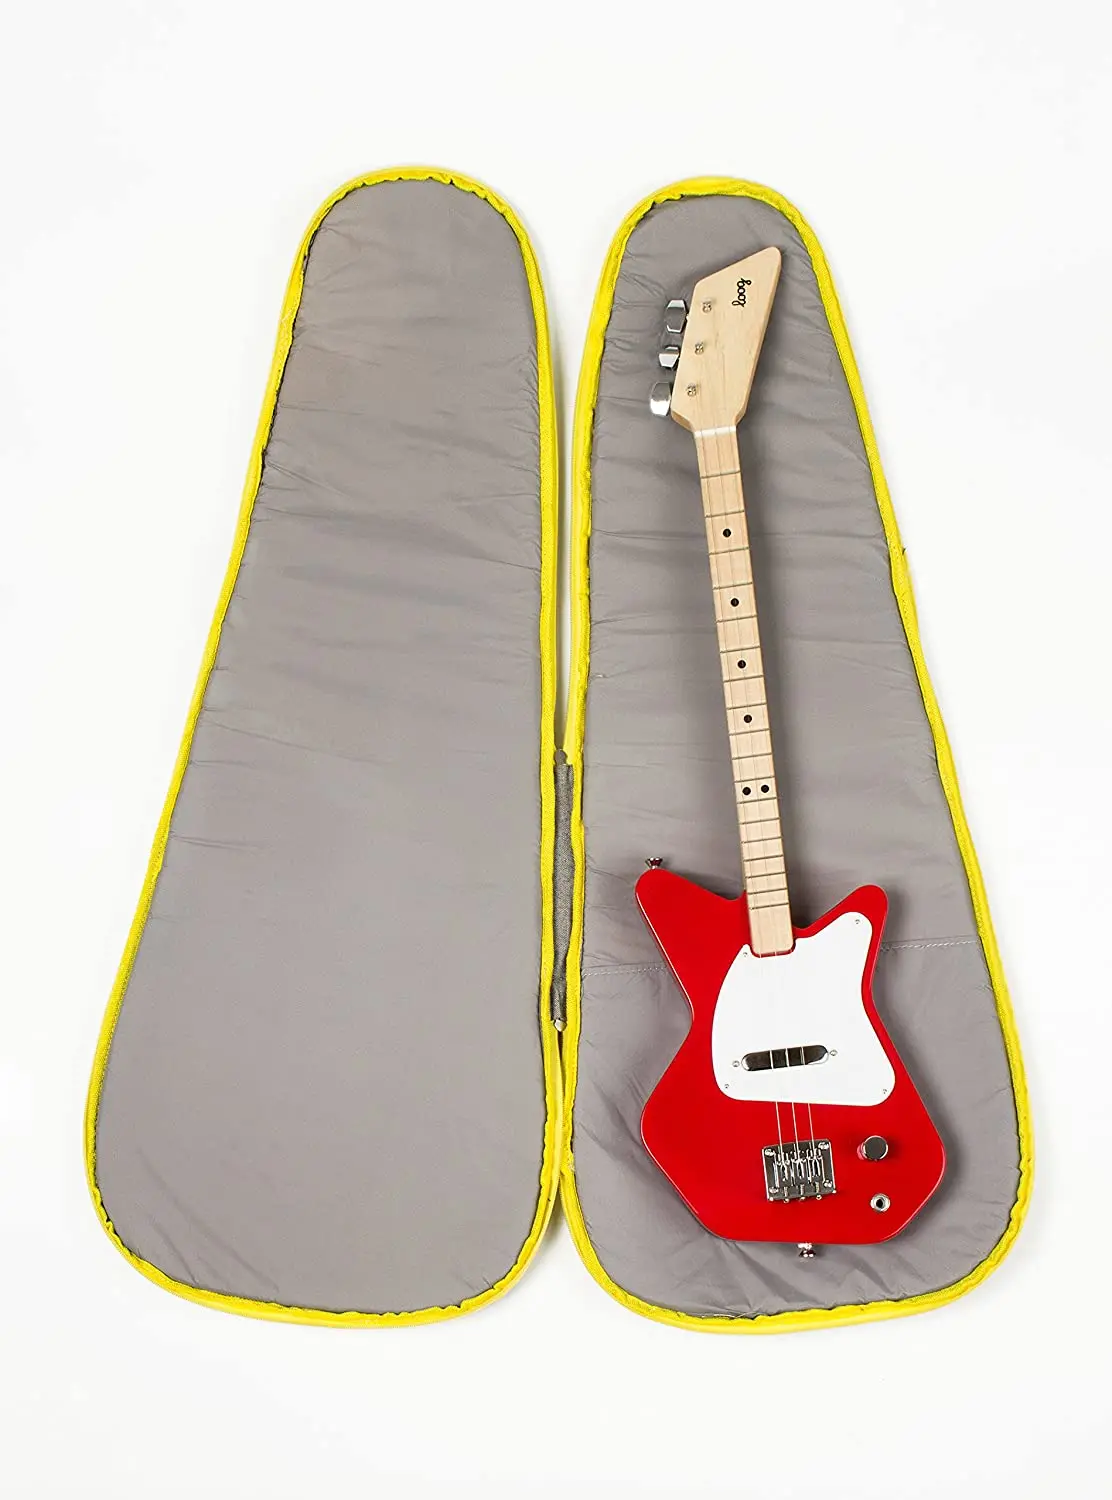 Guitar Bag Padded Electric Guitar Gig Bag Case Padding Dual Adjustable Shoulder Strap Electric Guitar Case Abstract orange 